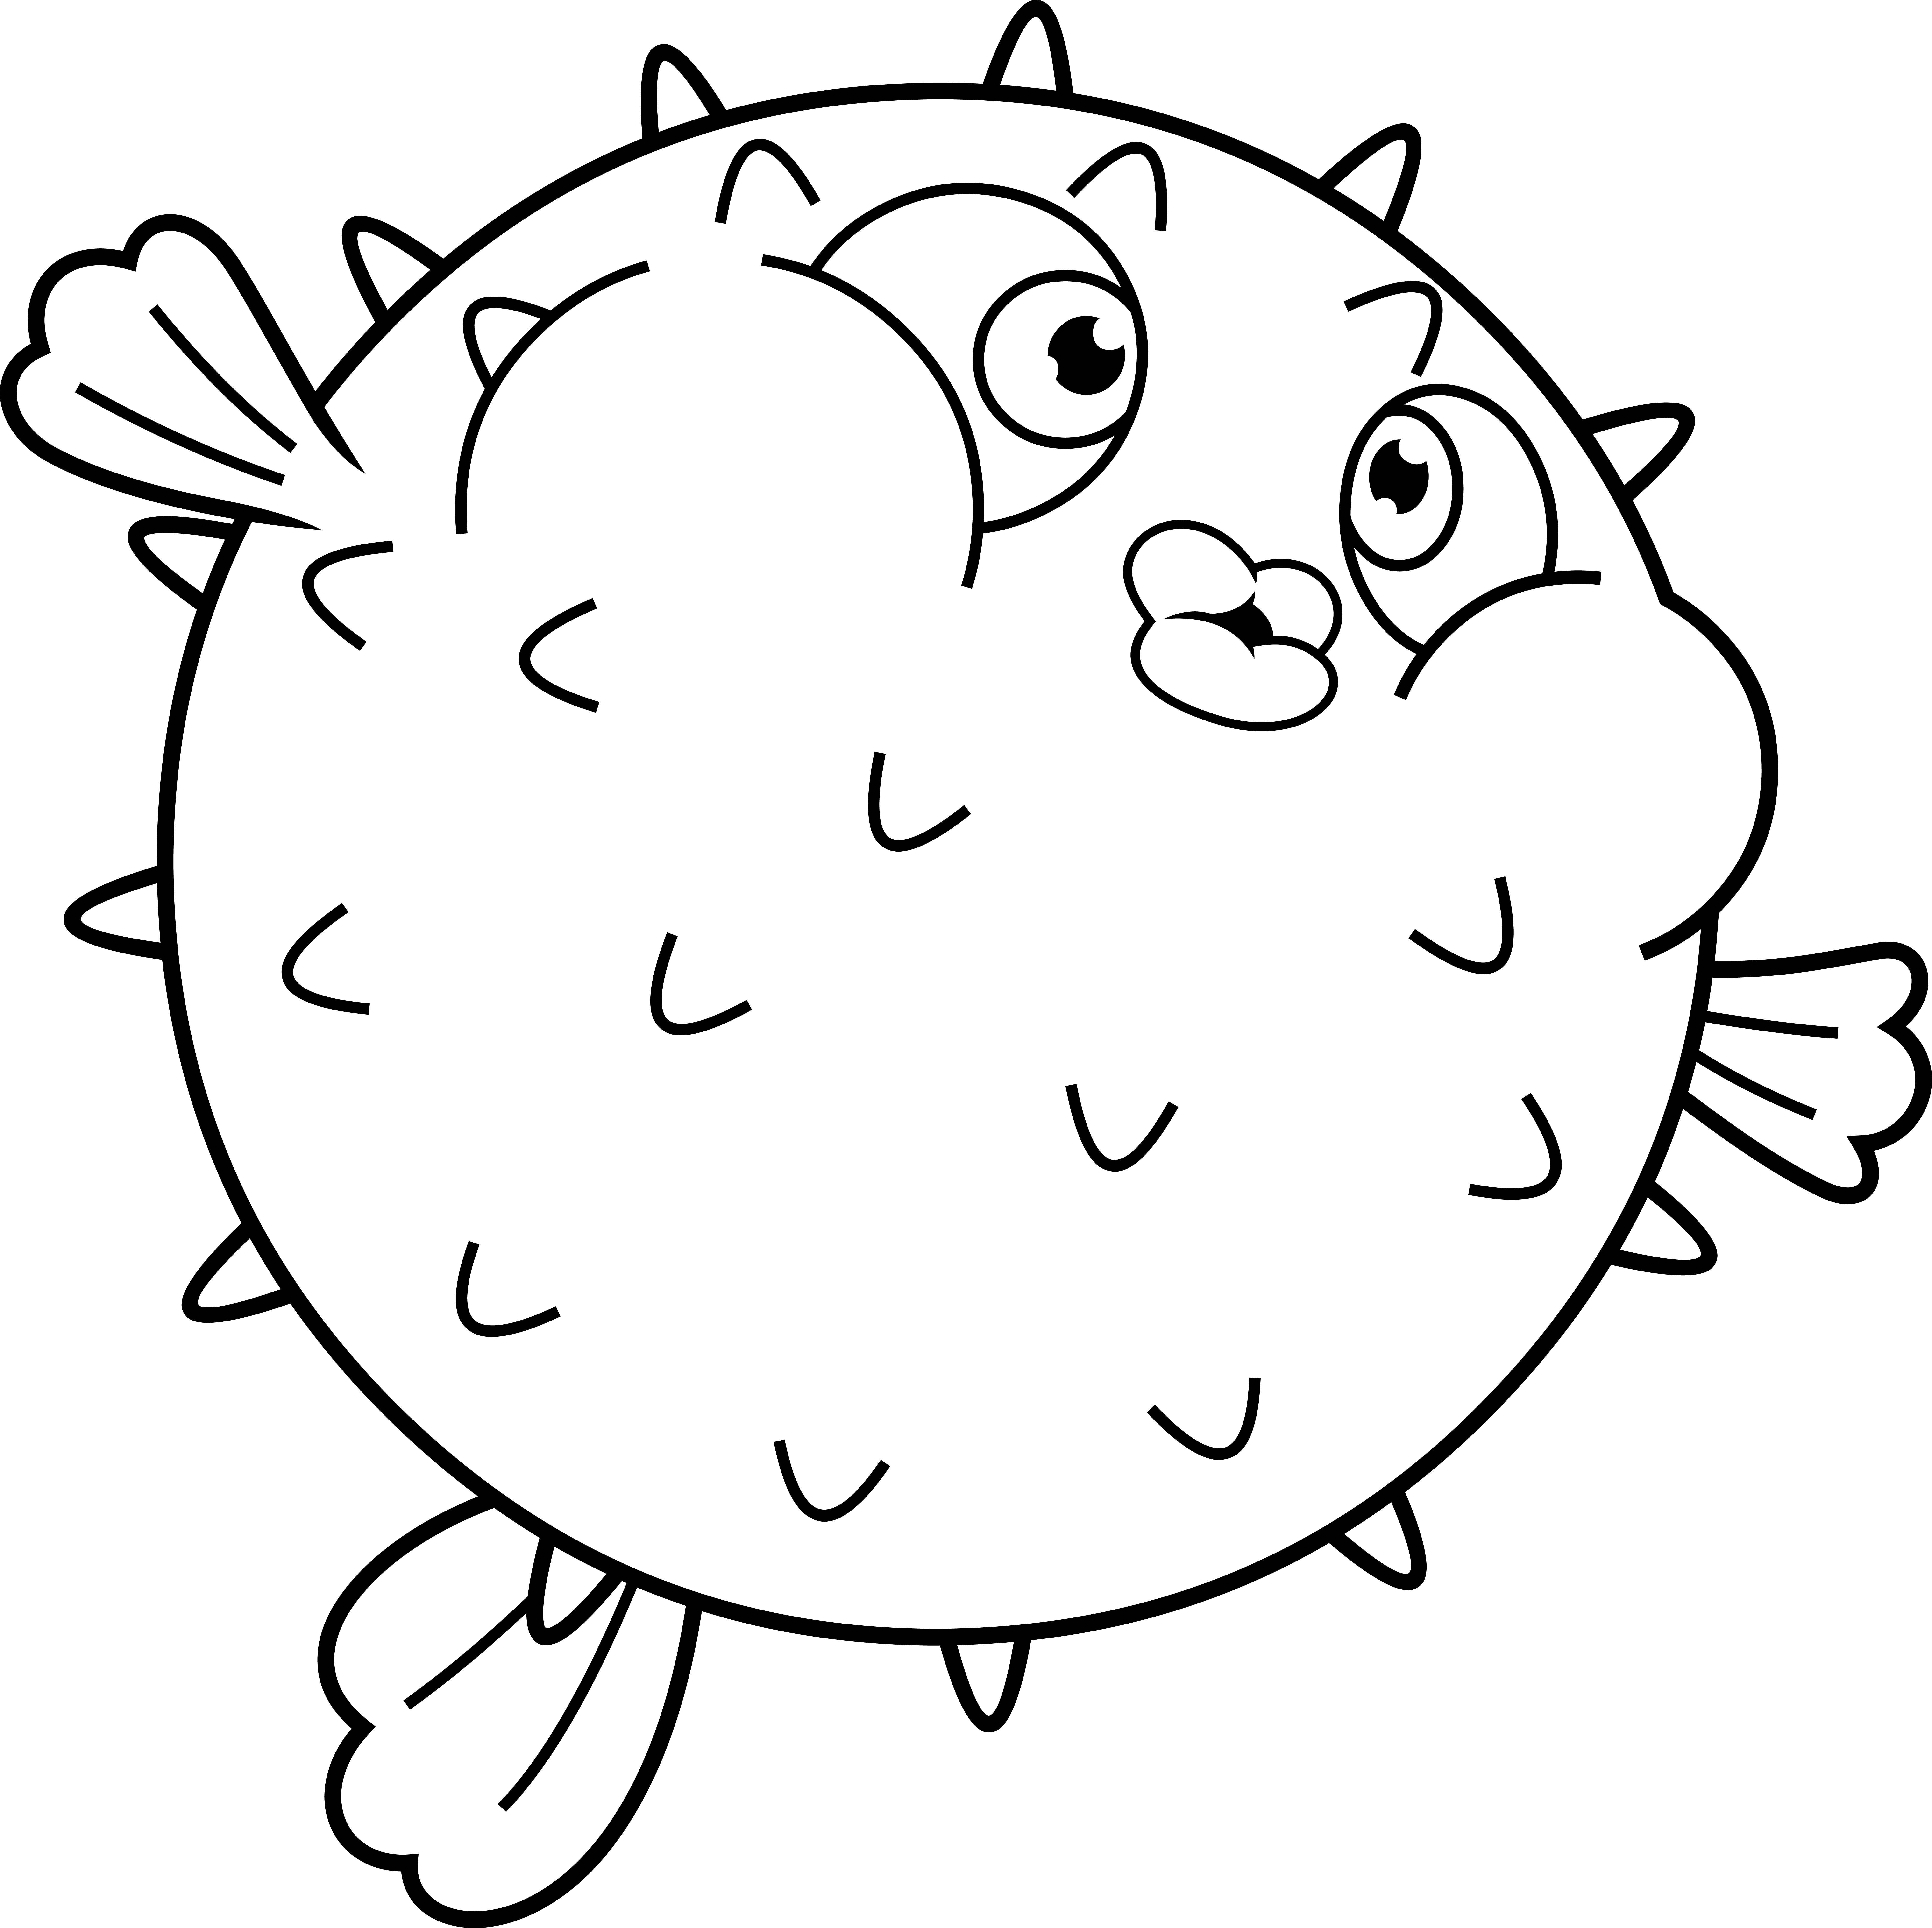 Раскраска рыба фугу с большими глазами формата А4 в высоком качестве